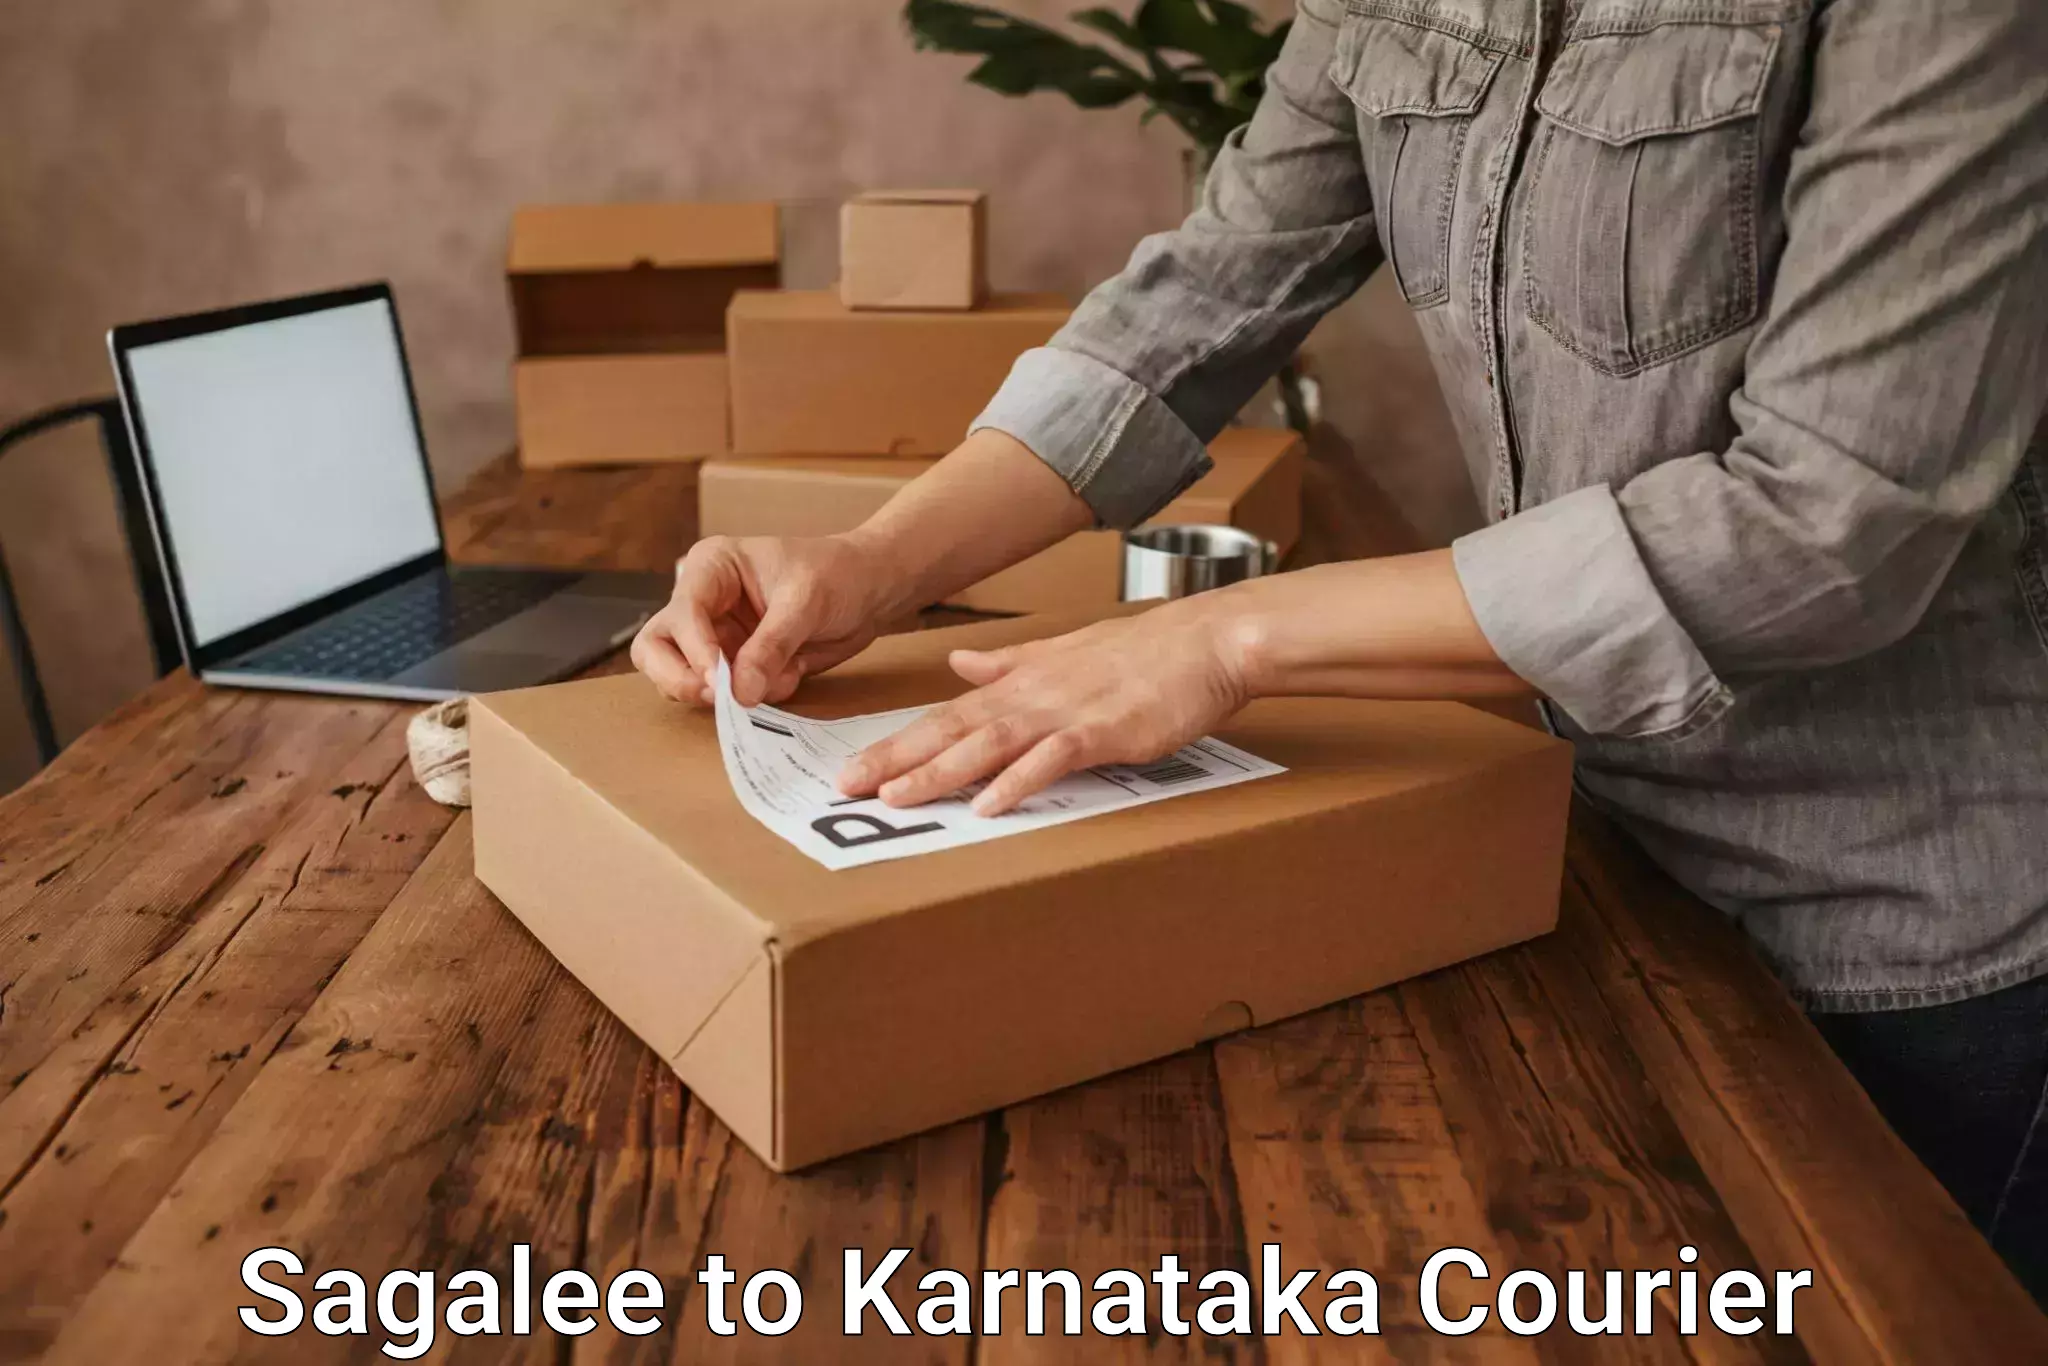 Smart logistics strategies Sagalee to Karnataka